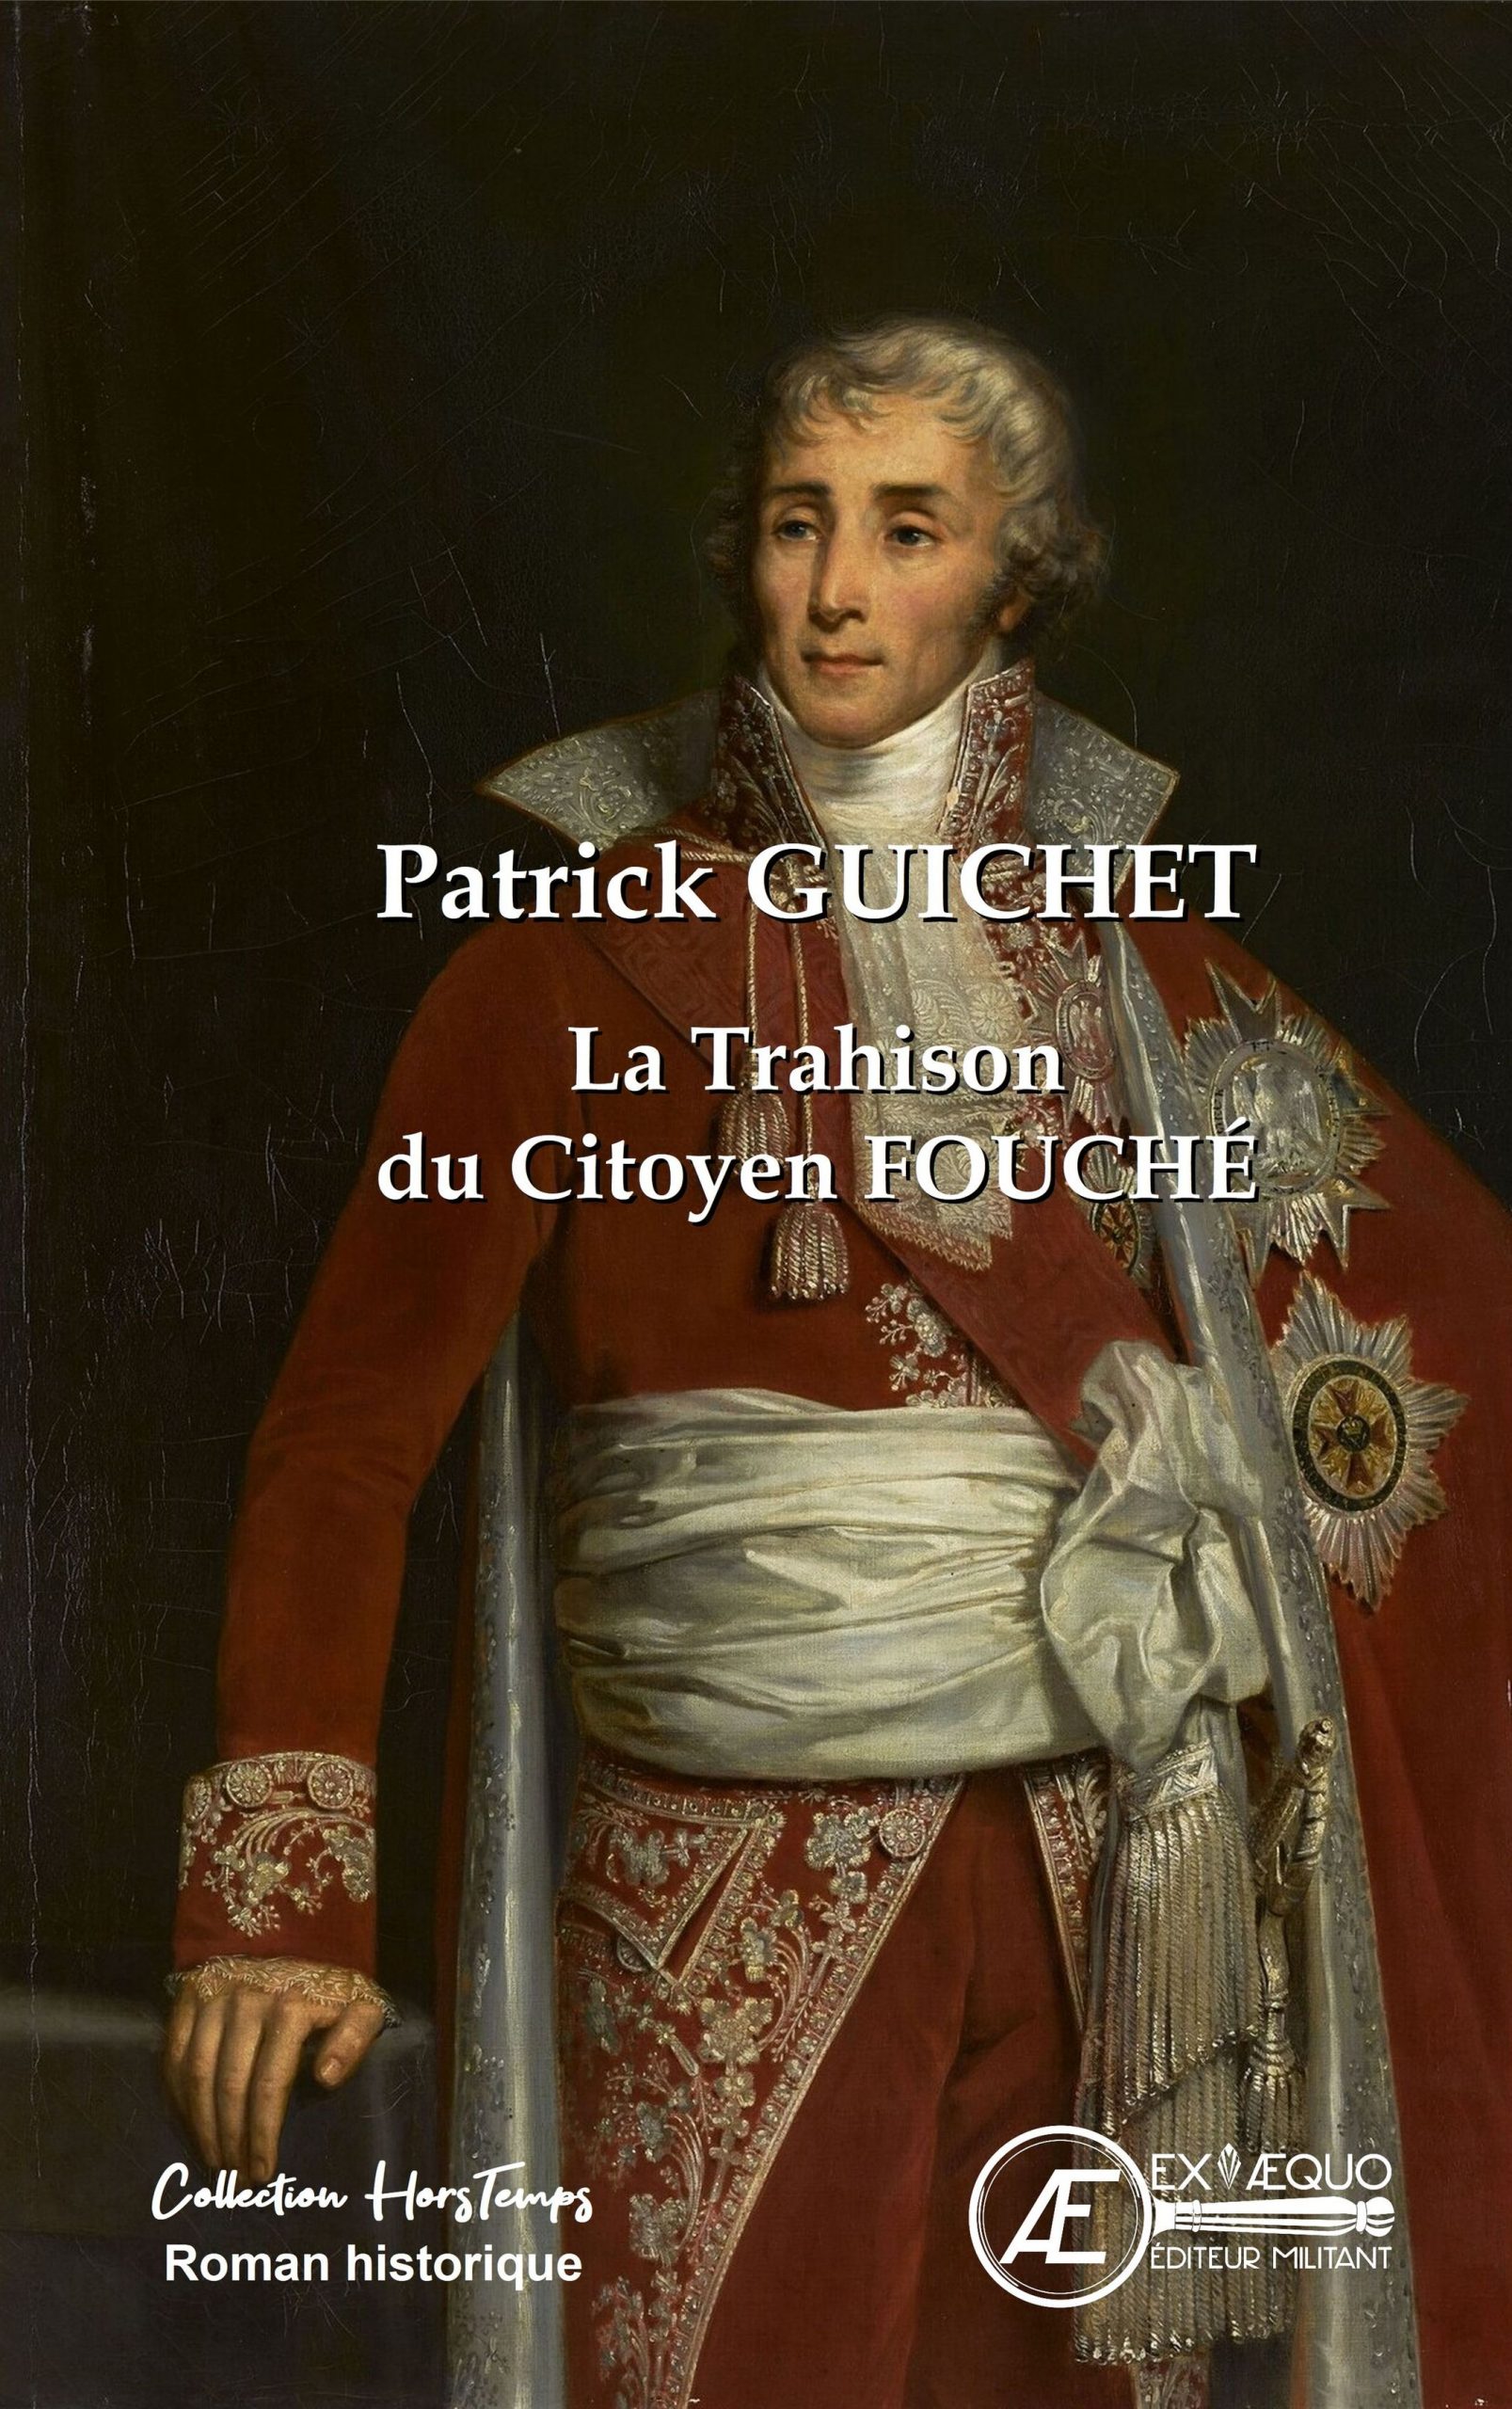 You are currently viewing La trahison du citoyen Fouché, de Patrick Guichet